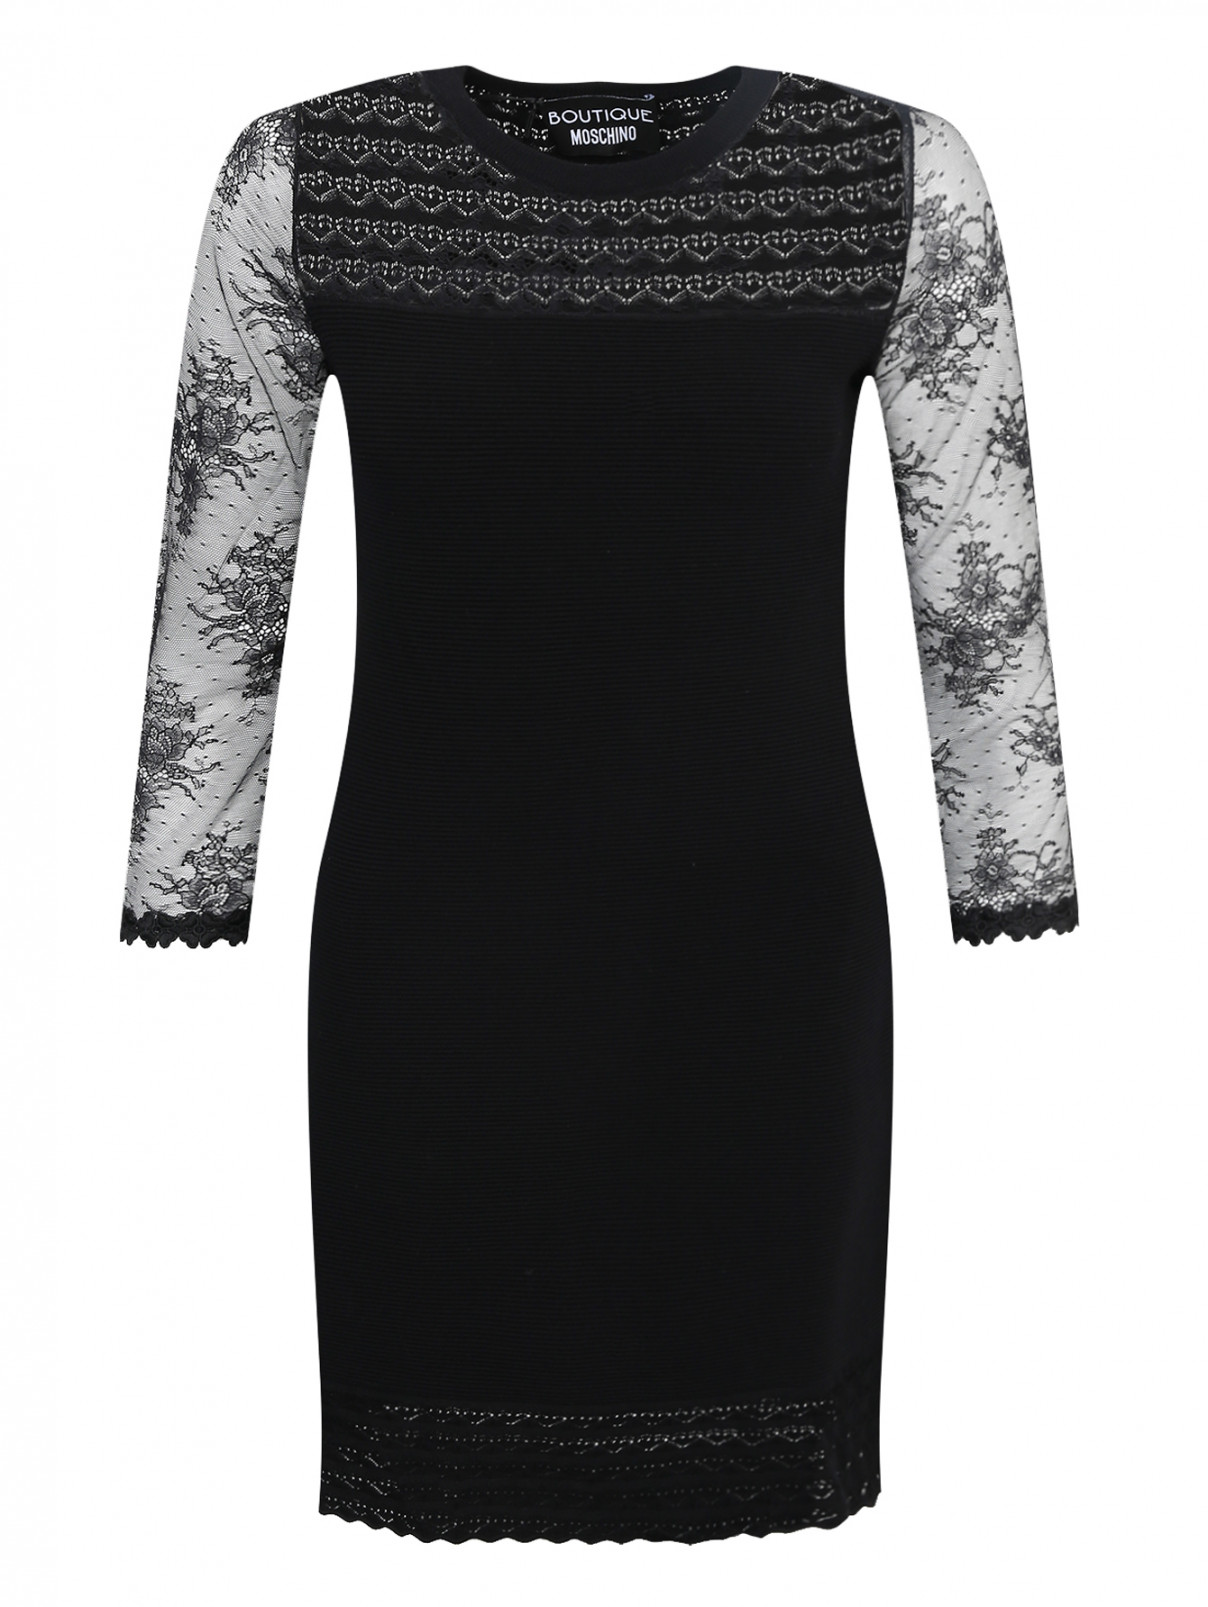 Платье с кружевной отделкой Moschino Boutique  –  Общий вид  – Цвет:  Черный